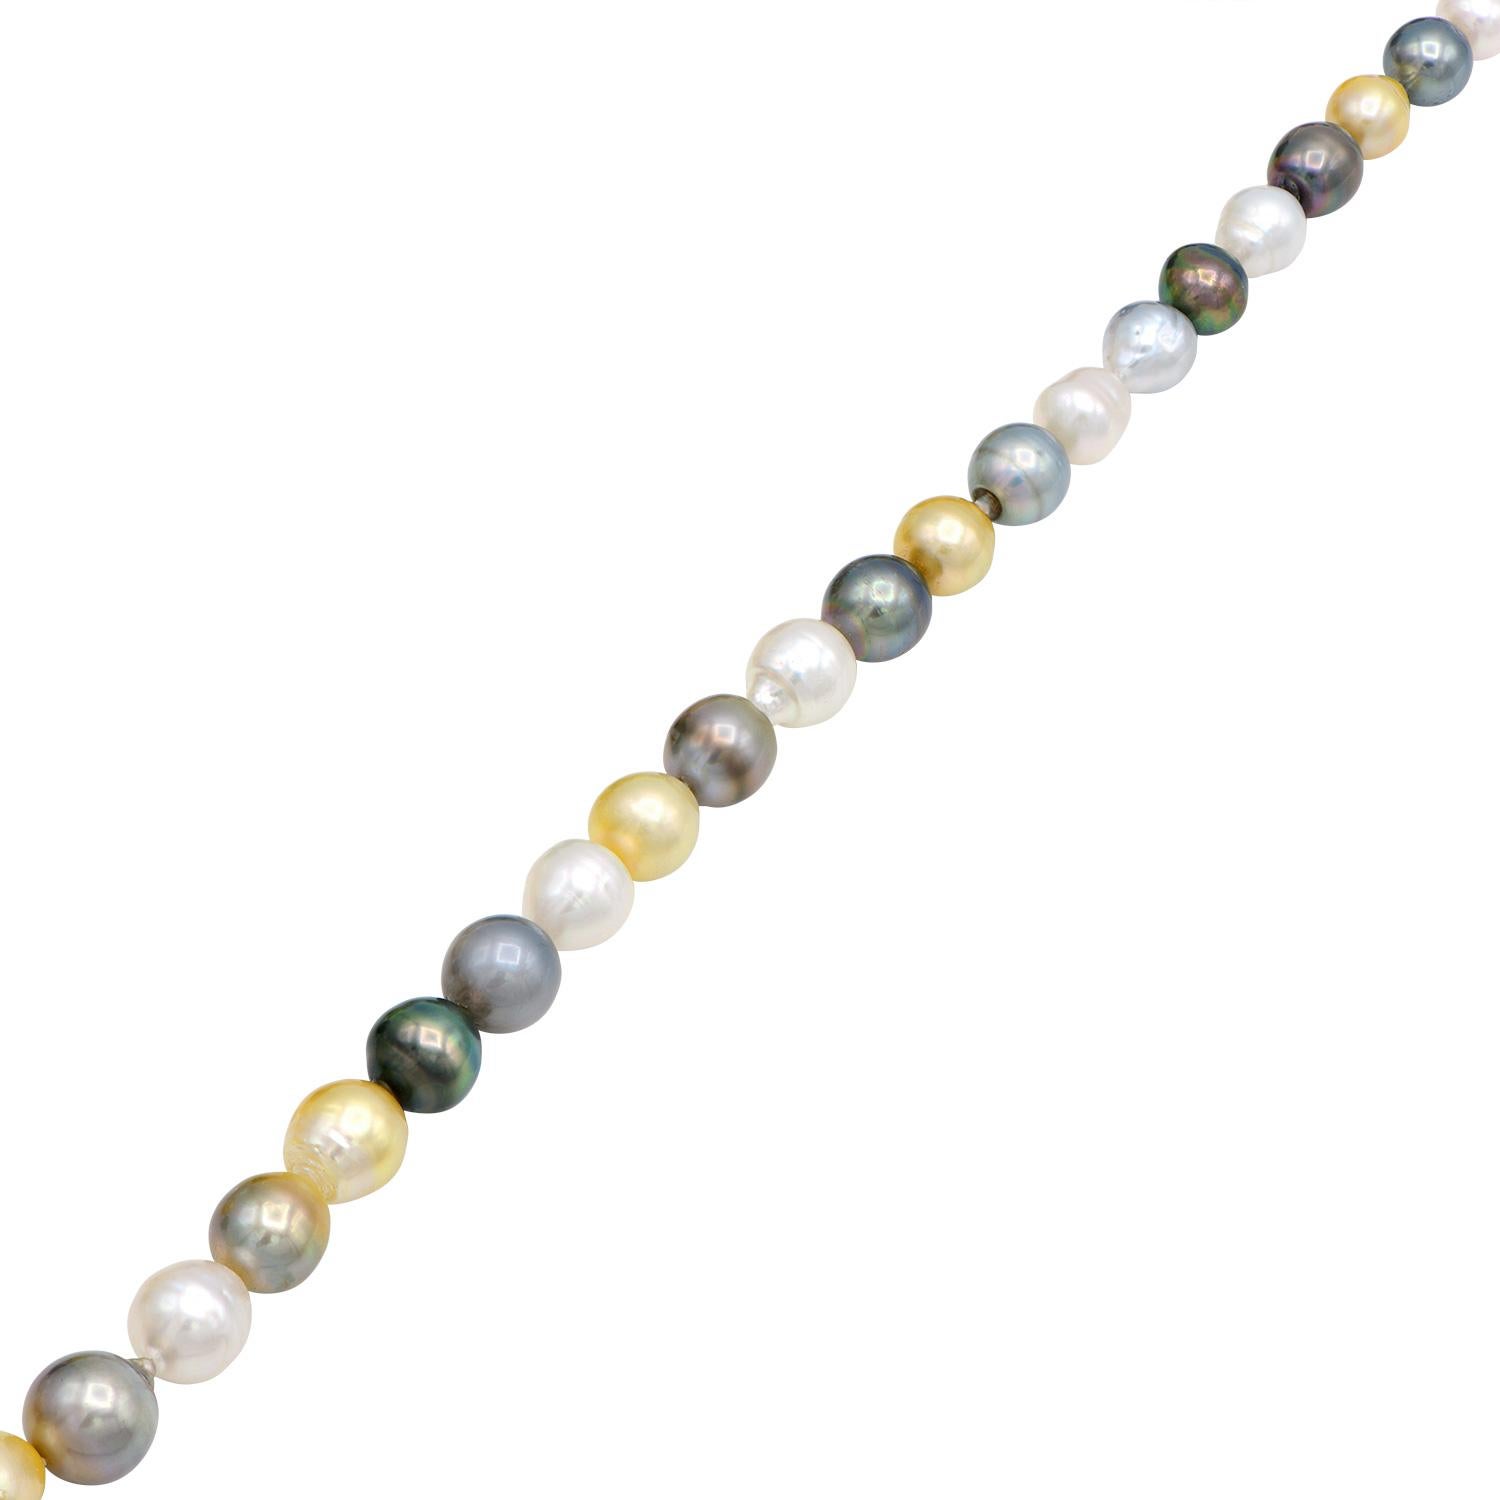 Dieser wunderschöne, einzigartige Perlenstrang besteht aus barocken Südsee- und Tahiti-Perlen in Schwarz-, Gold- und Weiß-Tönen. Die Perlen haben eine Größe von 10,8-14,6 mm. Der Strang wird mit einem Doppelknoten zwischen jeder Perle aufgefädelt